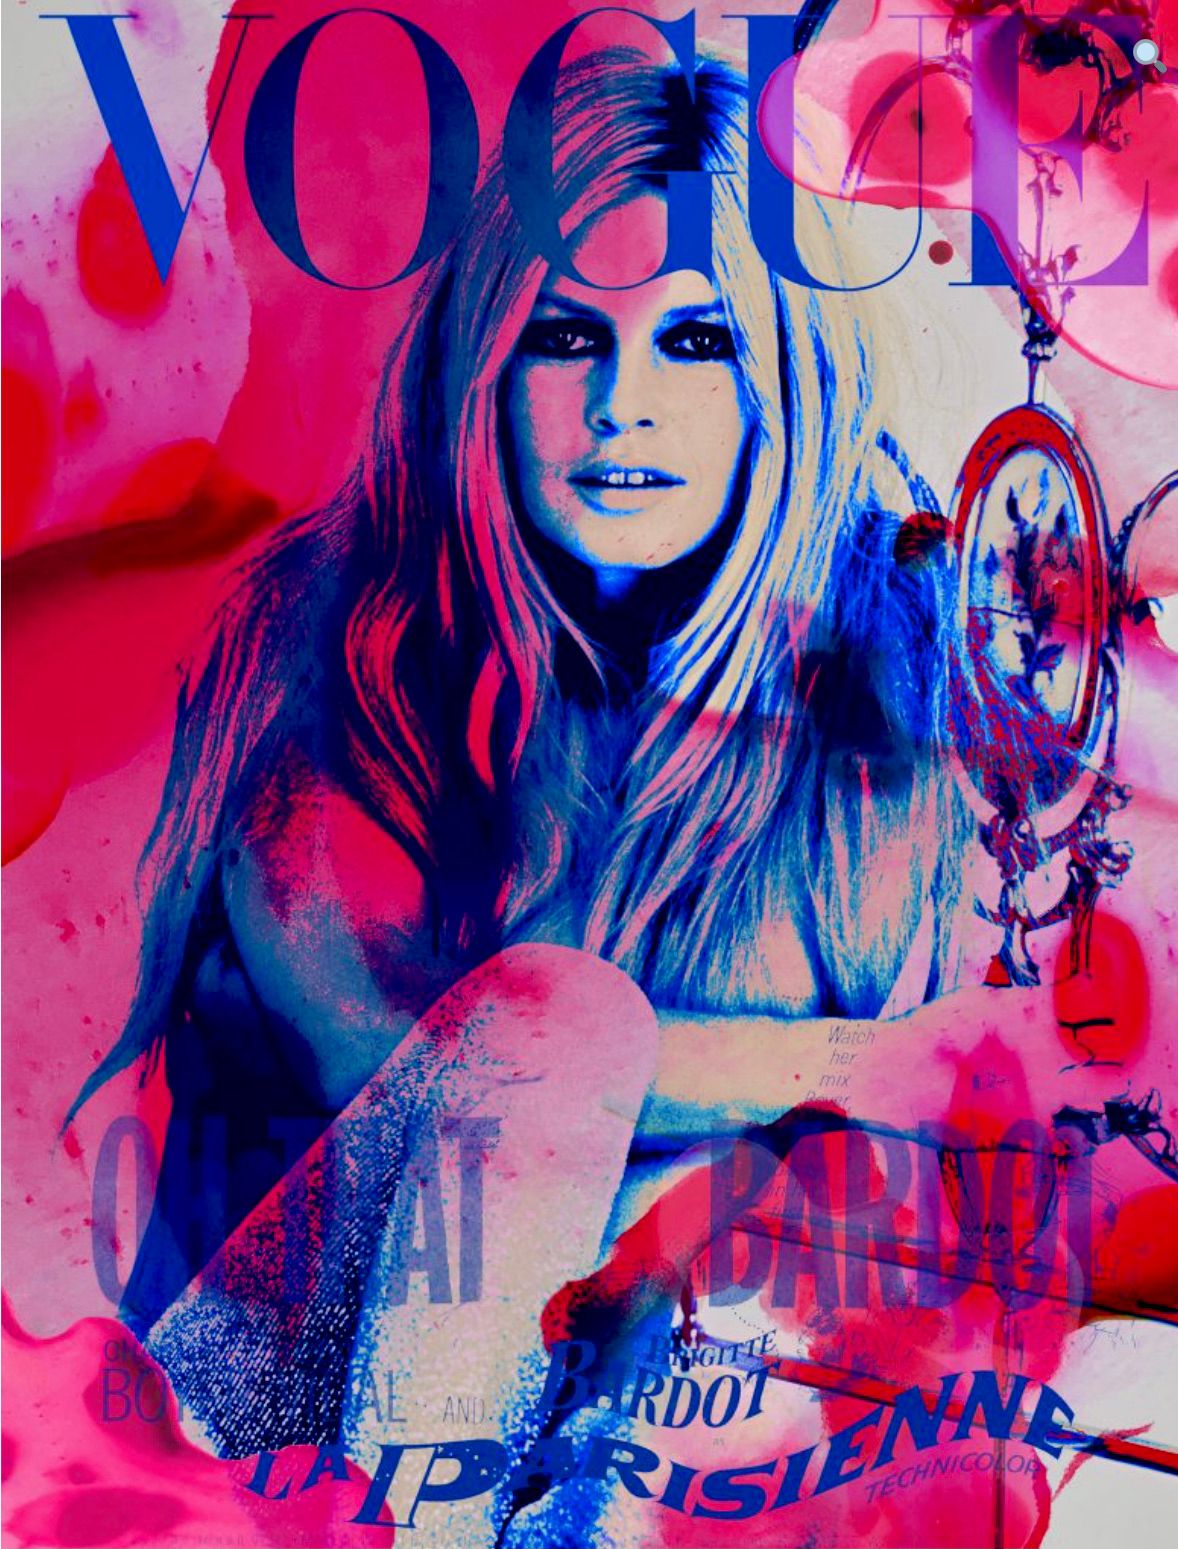 Nathali von Kretschmann Collage Painting Copertina di Vogue Brigitte Bardot